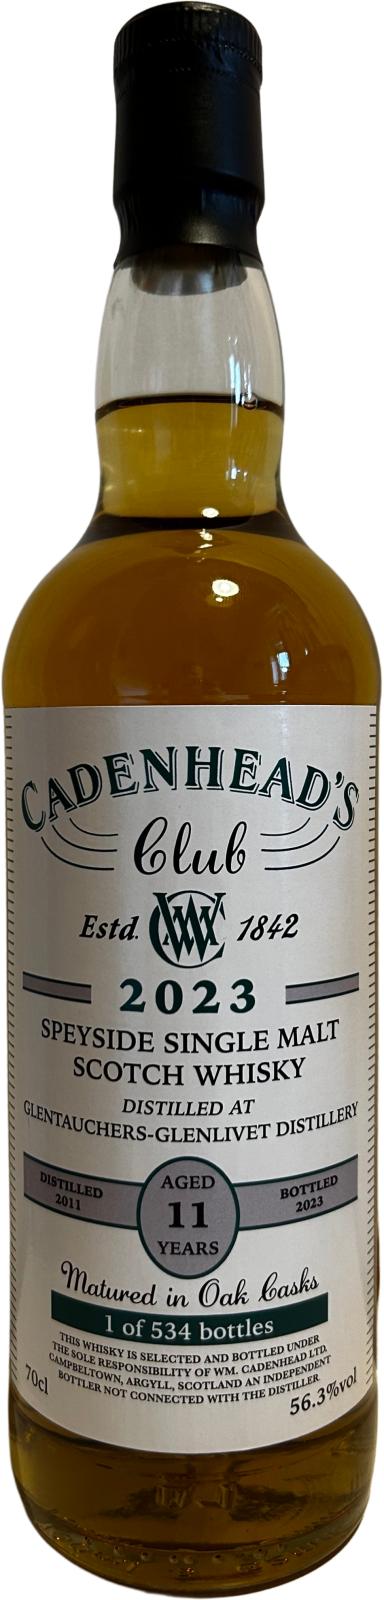 Cadenhead's Club 2023 Aged 11 Year Old Scotch Whisky | 700ML